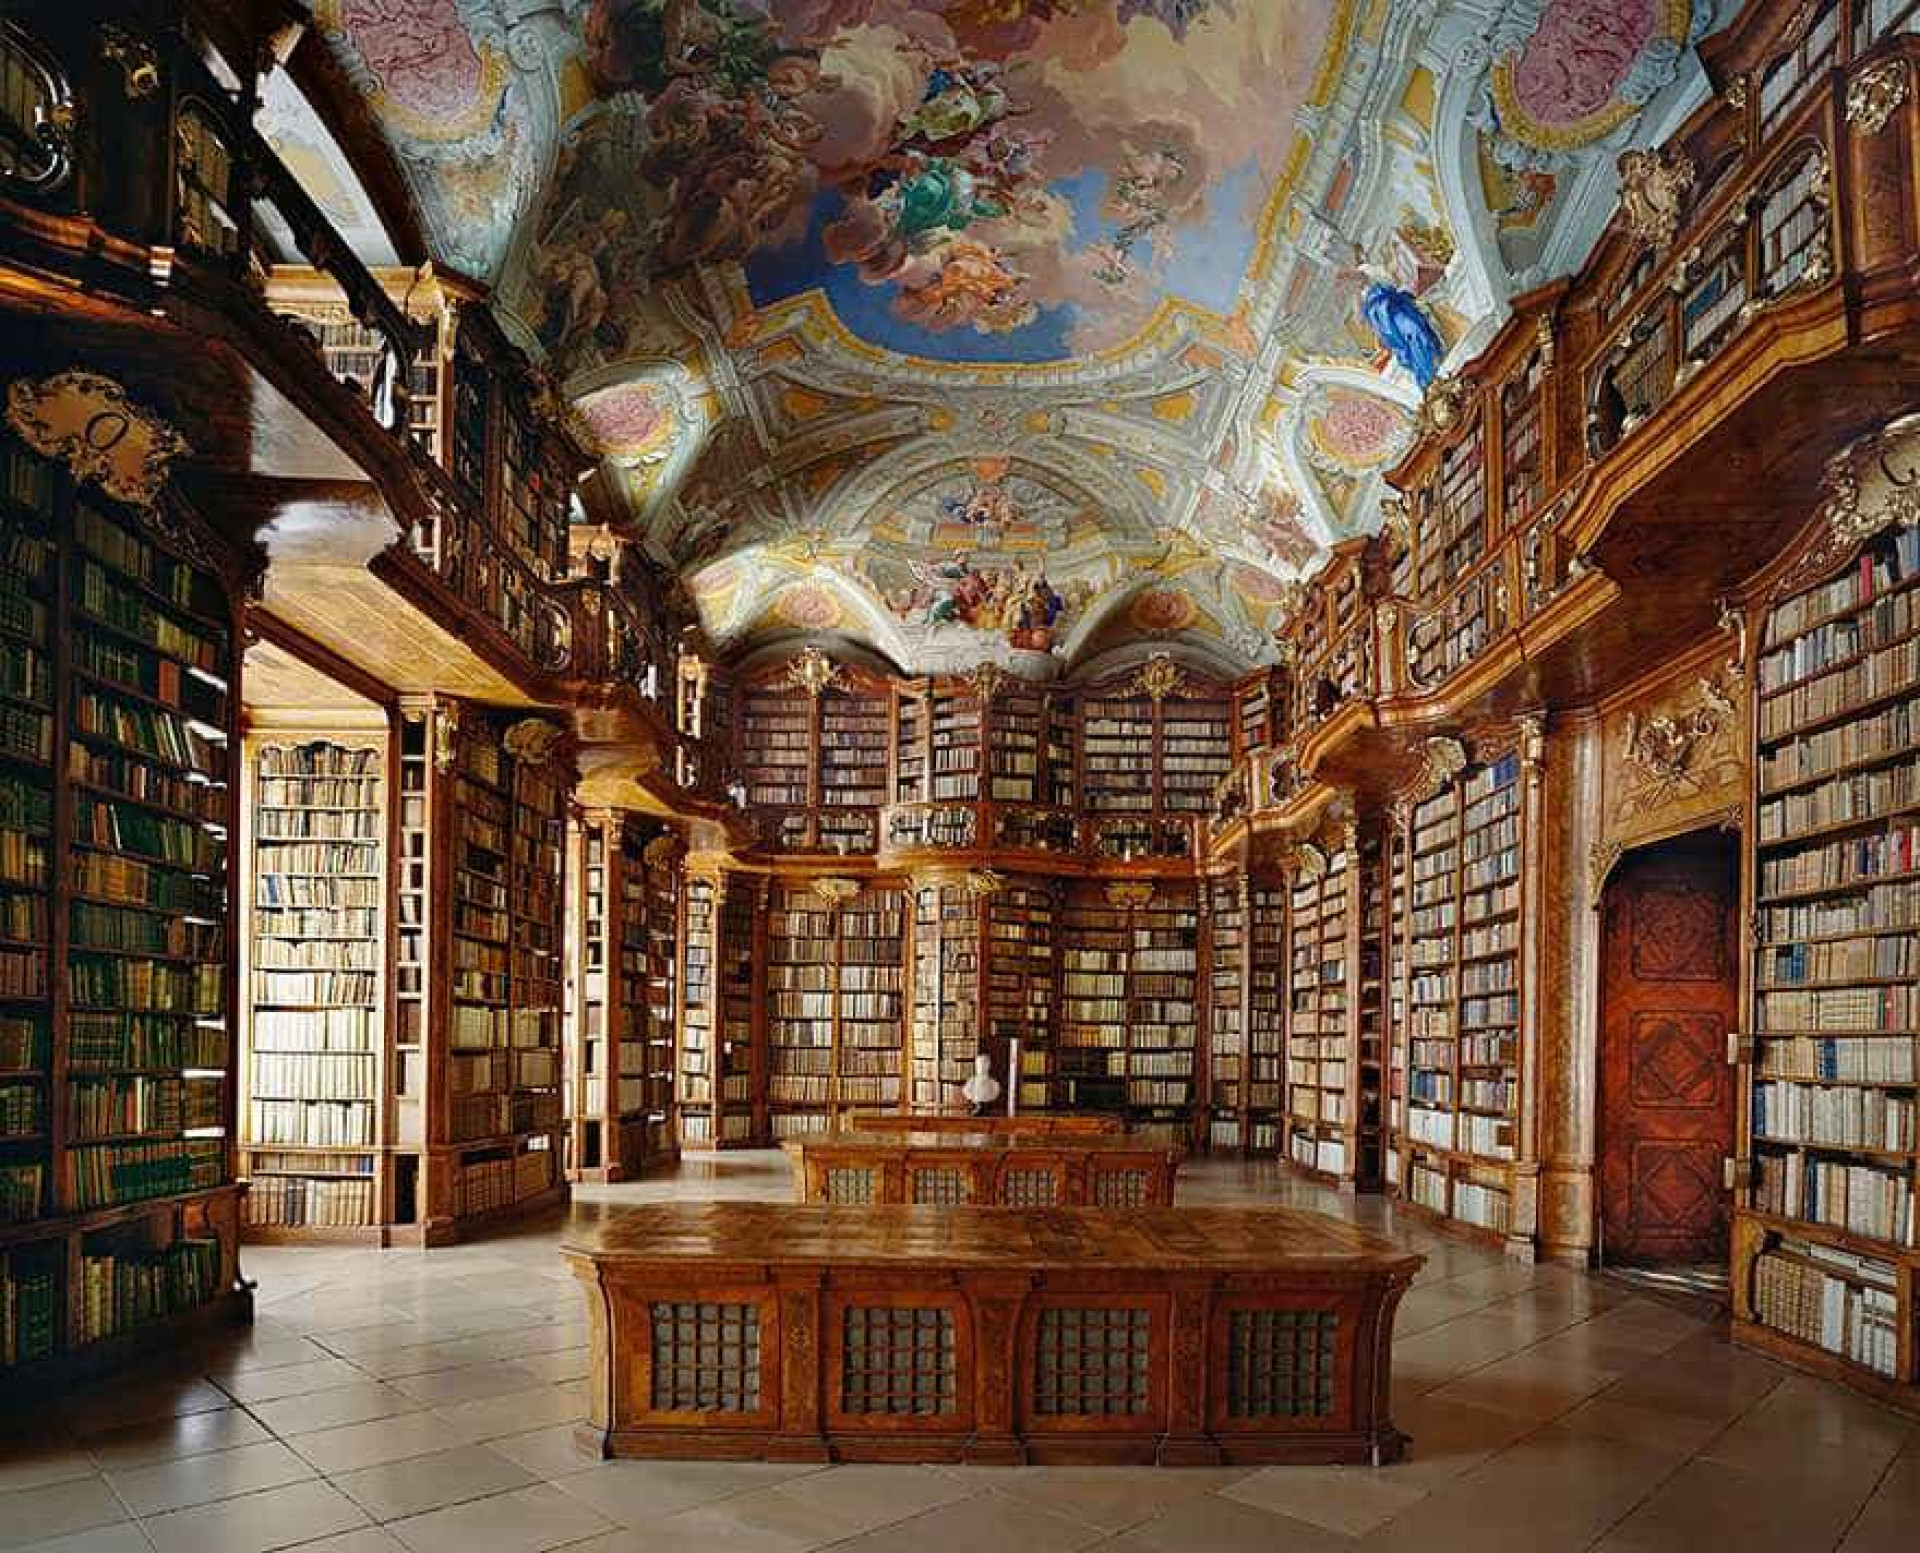 Библиотека в ней находится. Библиотека монастыря Санкт-Флориан, Австрия. Библиотека монастыря Святого Флориана, Австрия. Библиотека монастыря Святого Флориана. Библиотека Жуанина Коимбра Португалия.